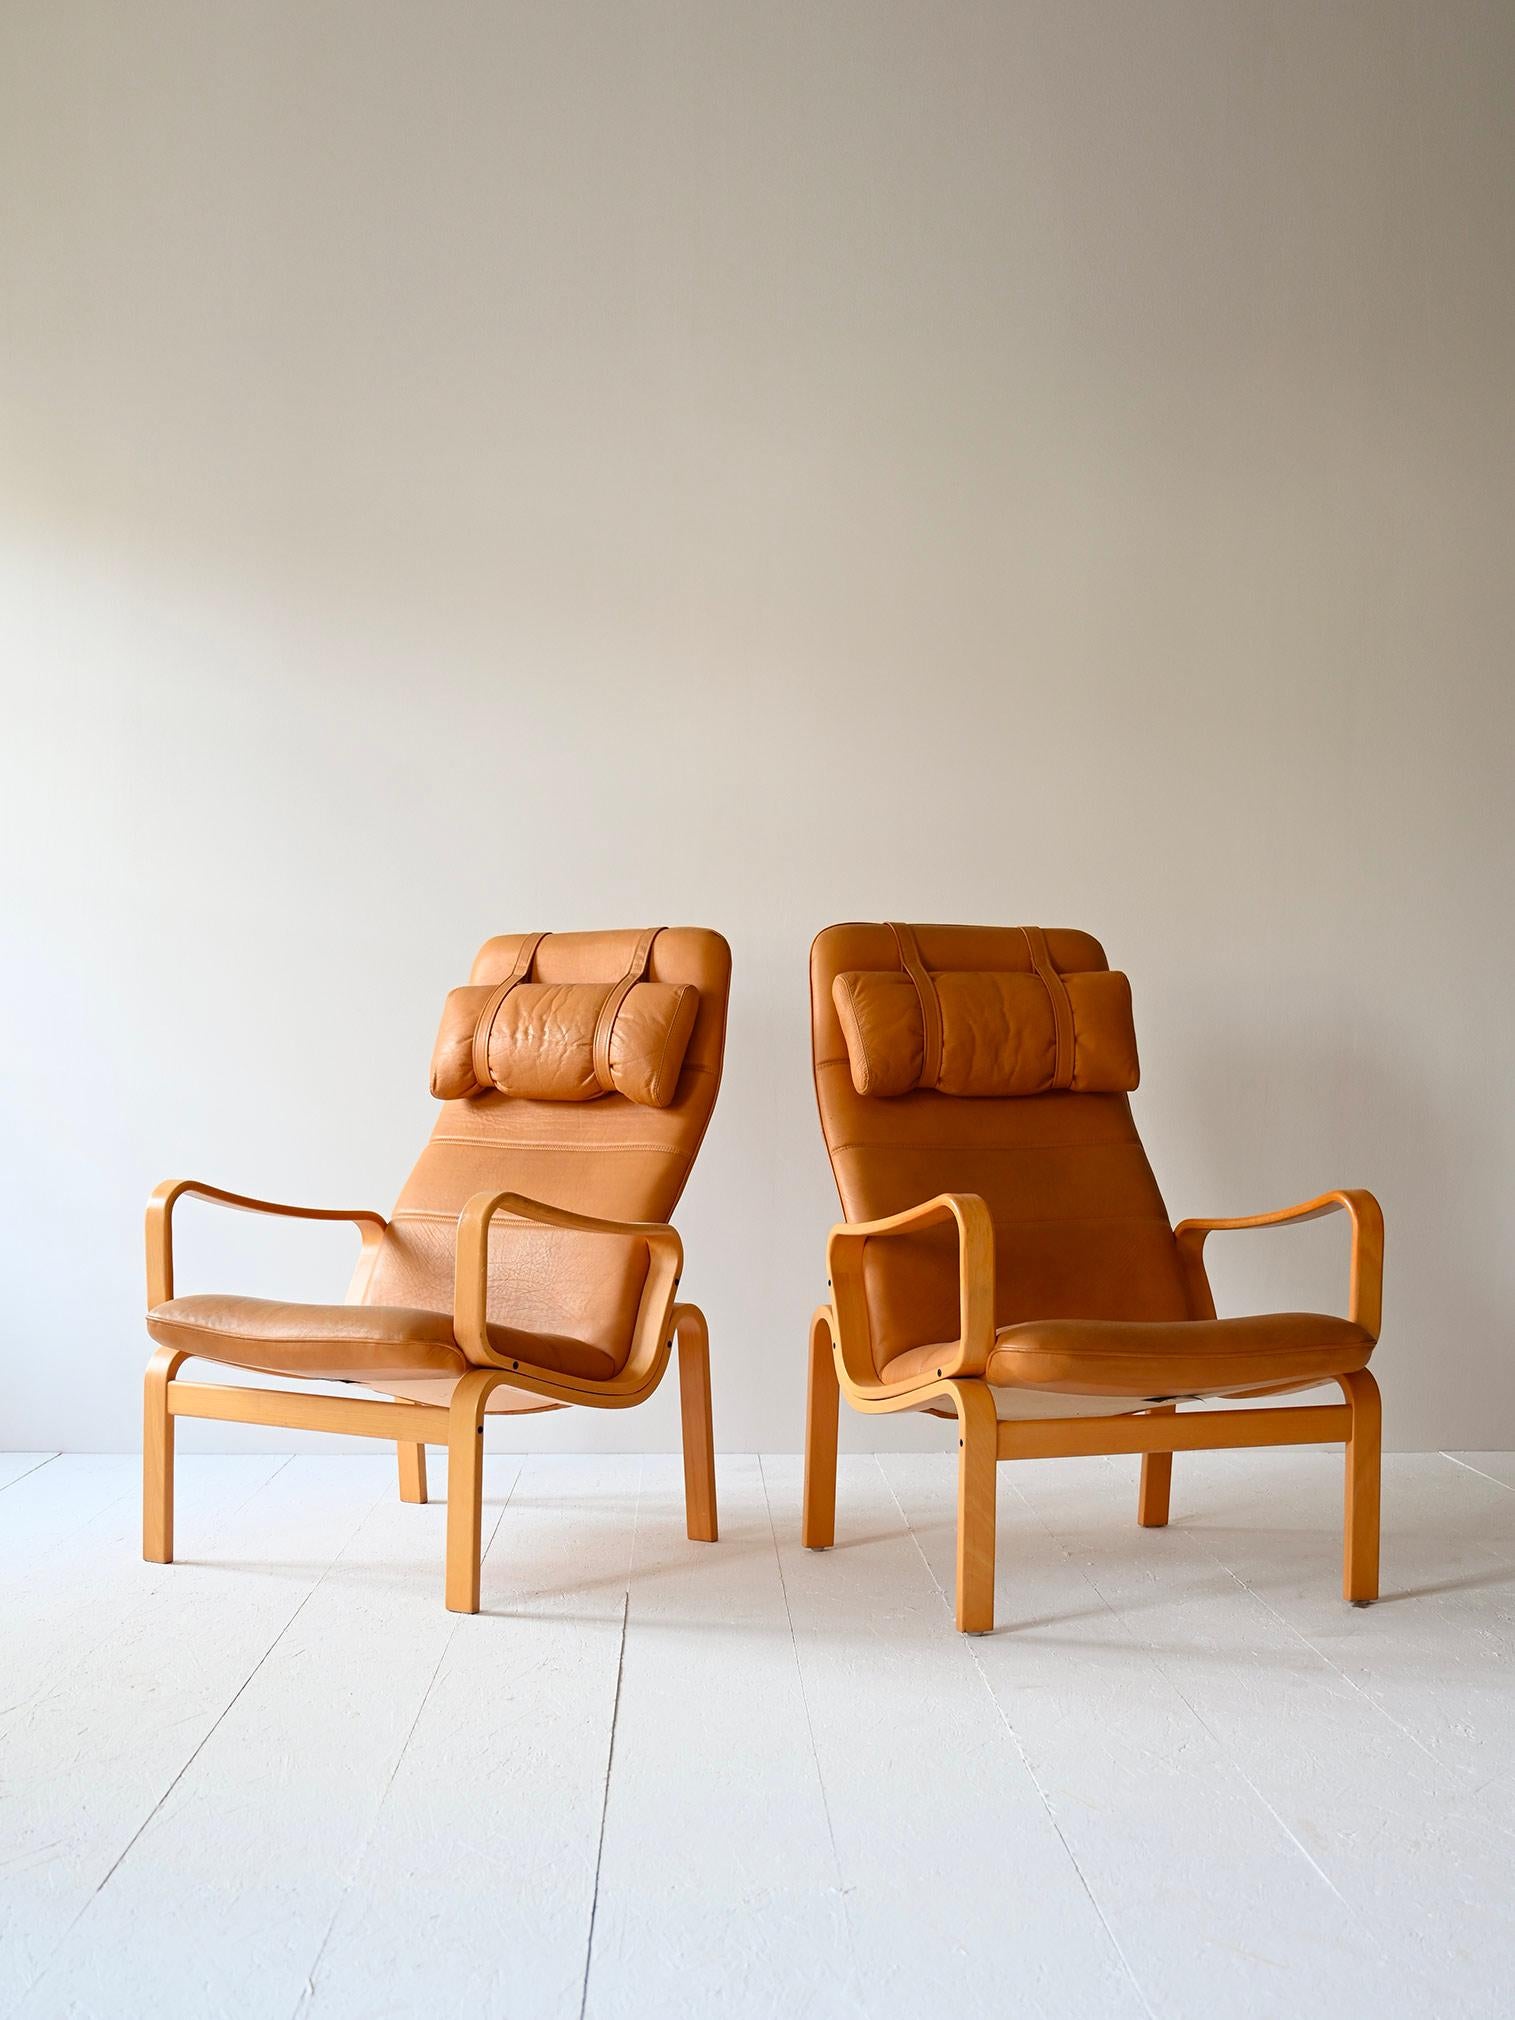 Ein Paar Stühle aus den 1980er Jahren aus skandinavischer Produktion.

Diese eleganten und bequemen Sessel bestehen aus einem geschwungenen Birkenholzrahmen und einem gepolsterten Sitz mit beigem Lederbezug. Die geschwungenen Formen erinnern an das